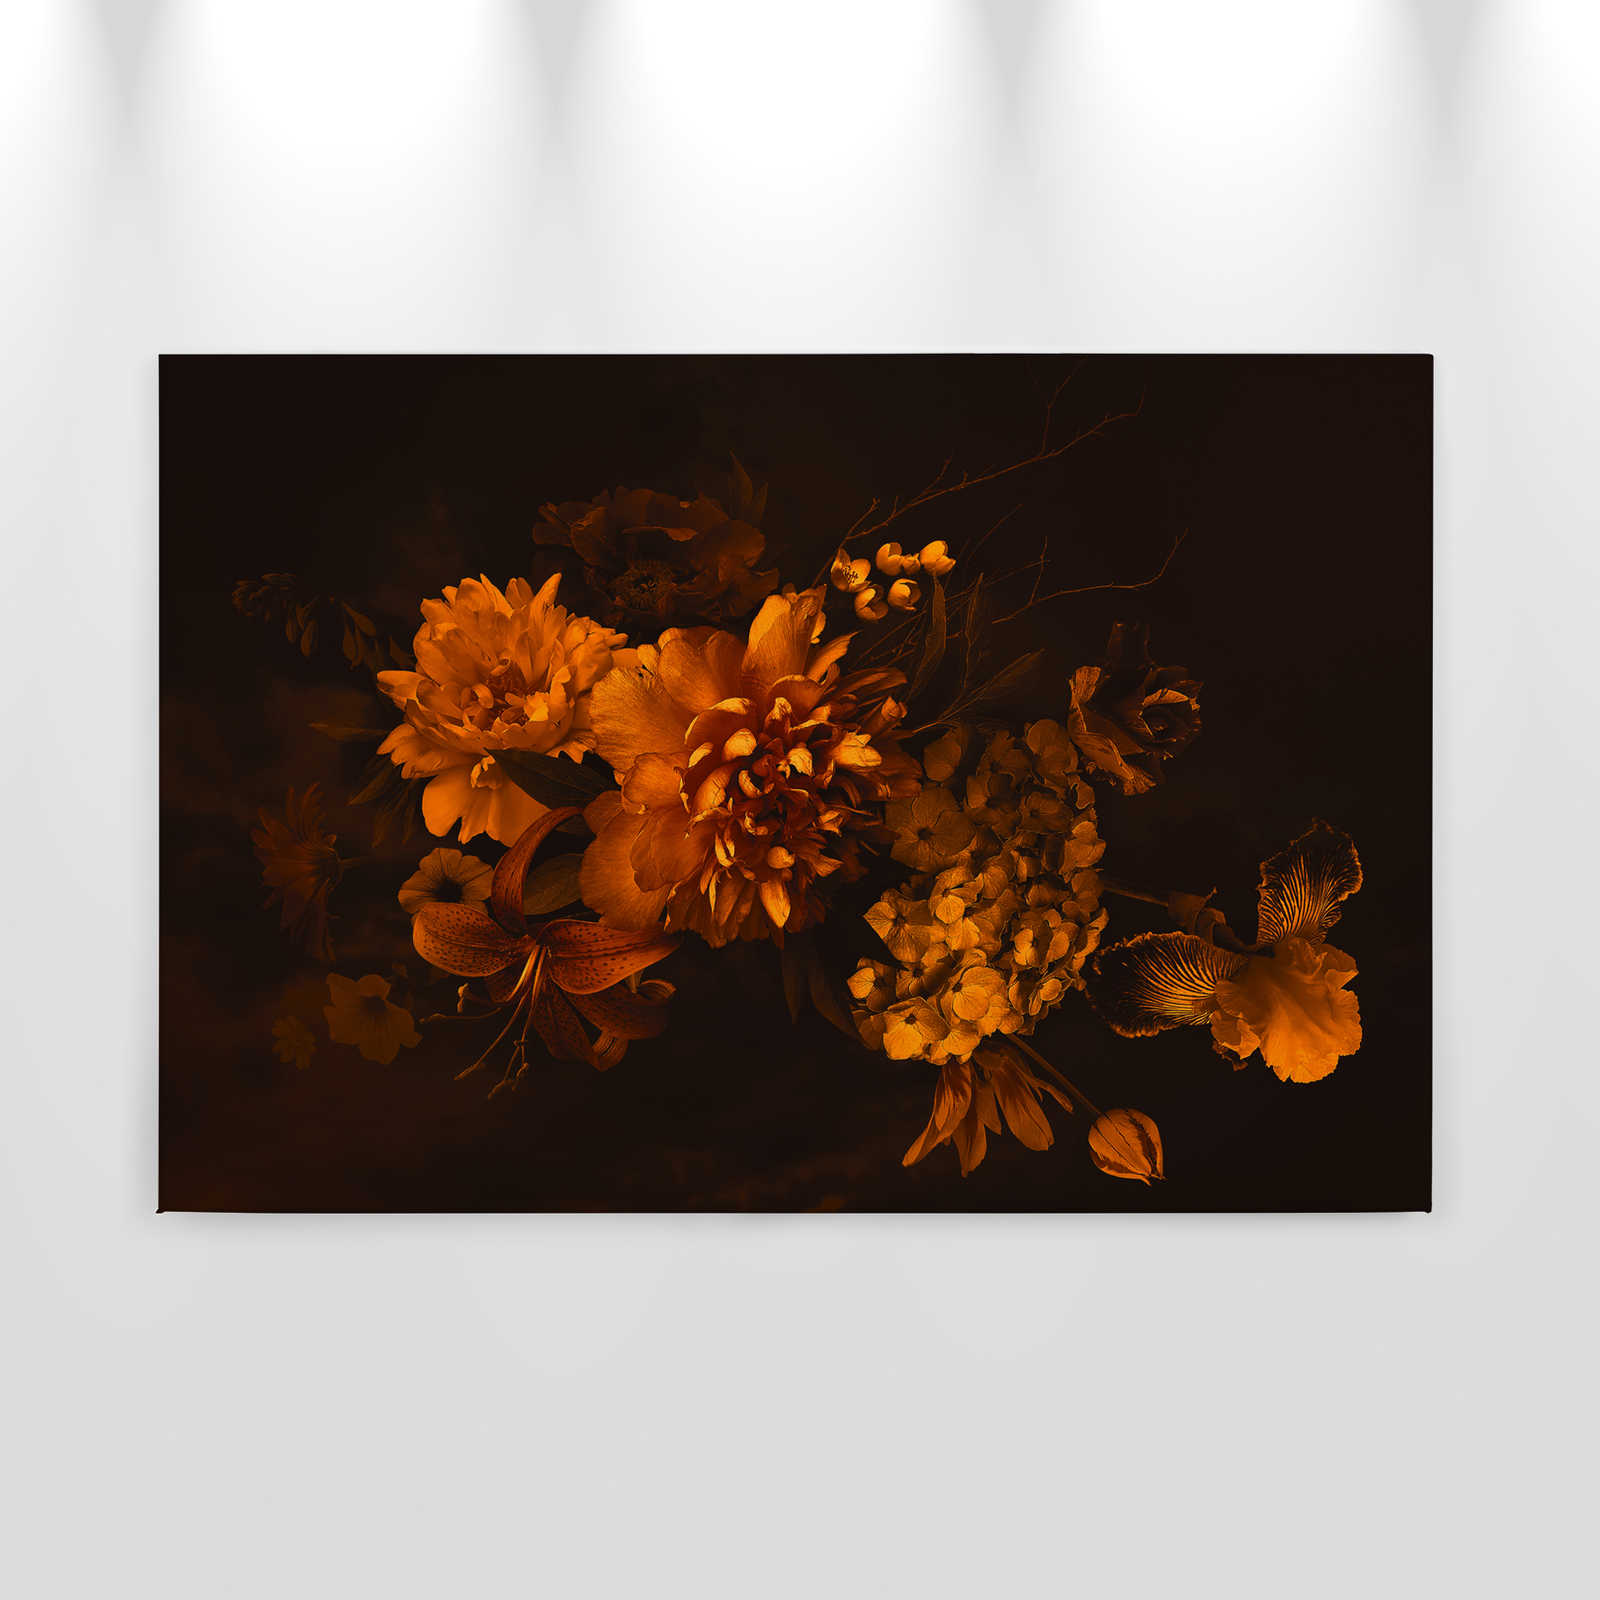             Toile avec bouquet de fleurs style botanique | orange noir - 0,90 m x 0,60 m
        